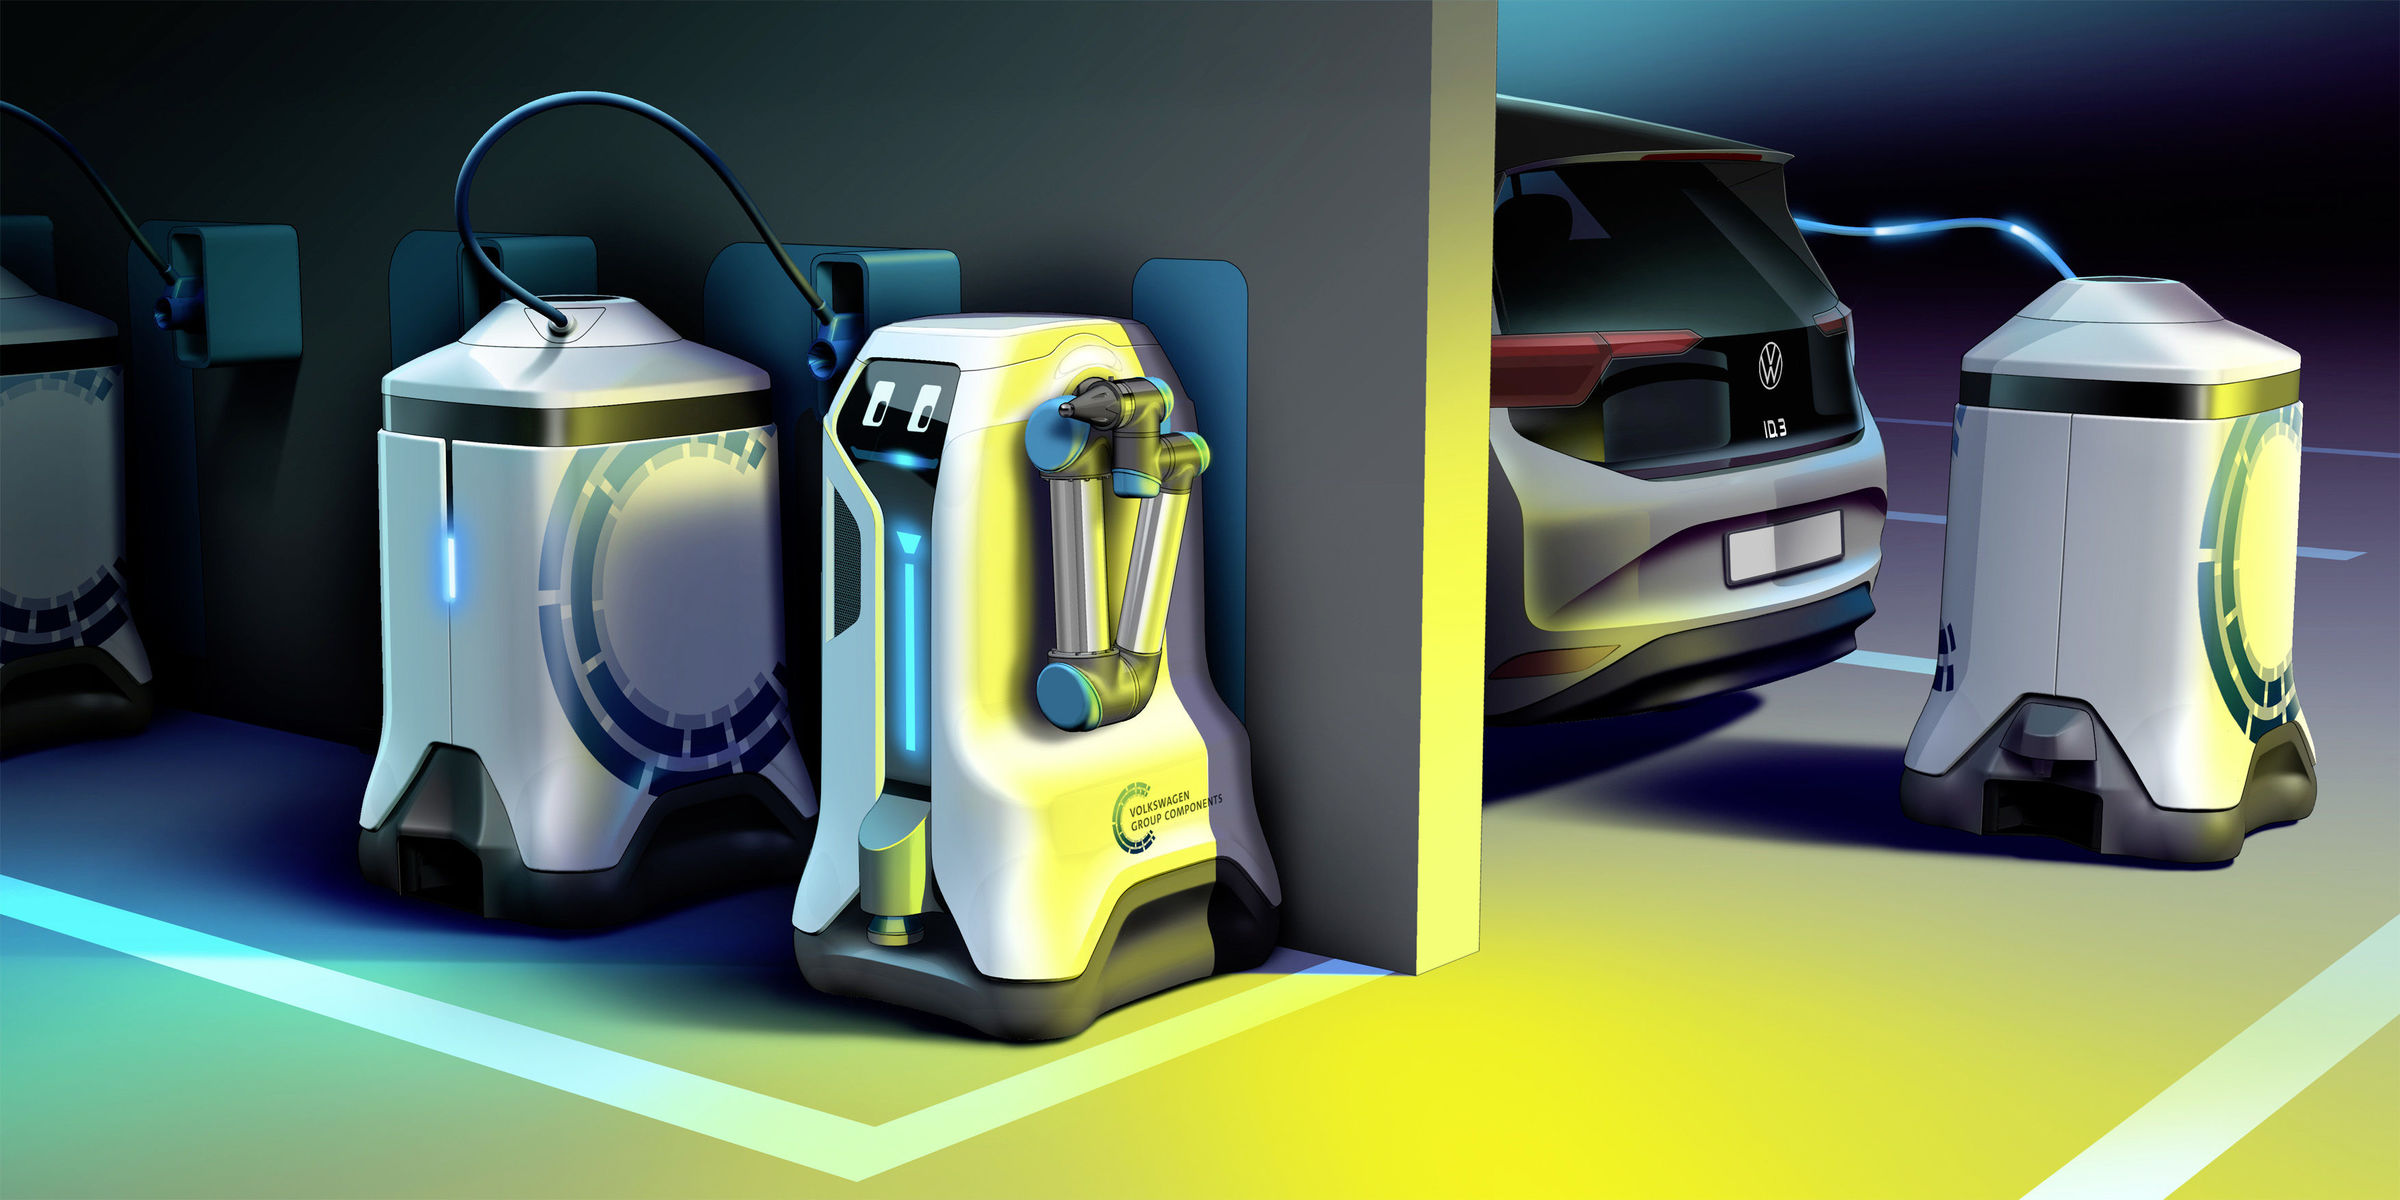 Volkswagen autonomous vehicle charging robots concept.